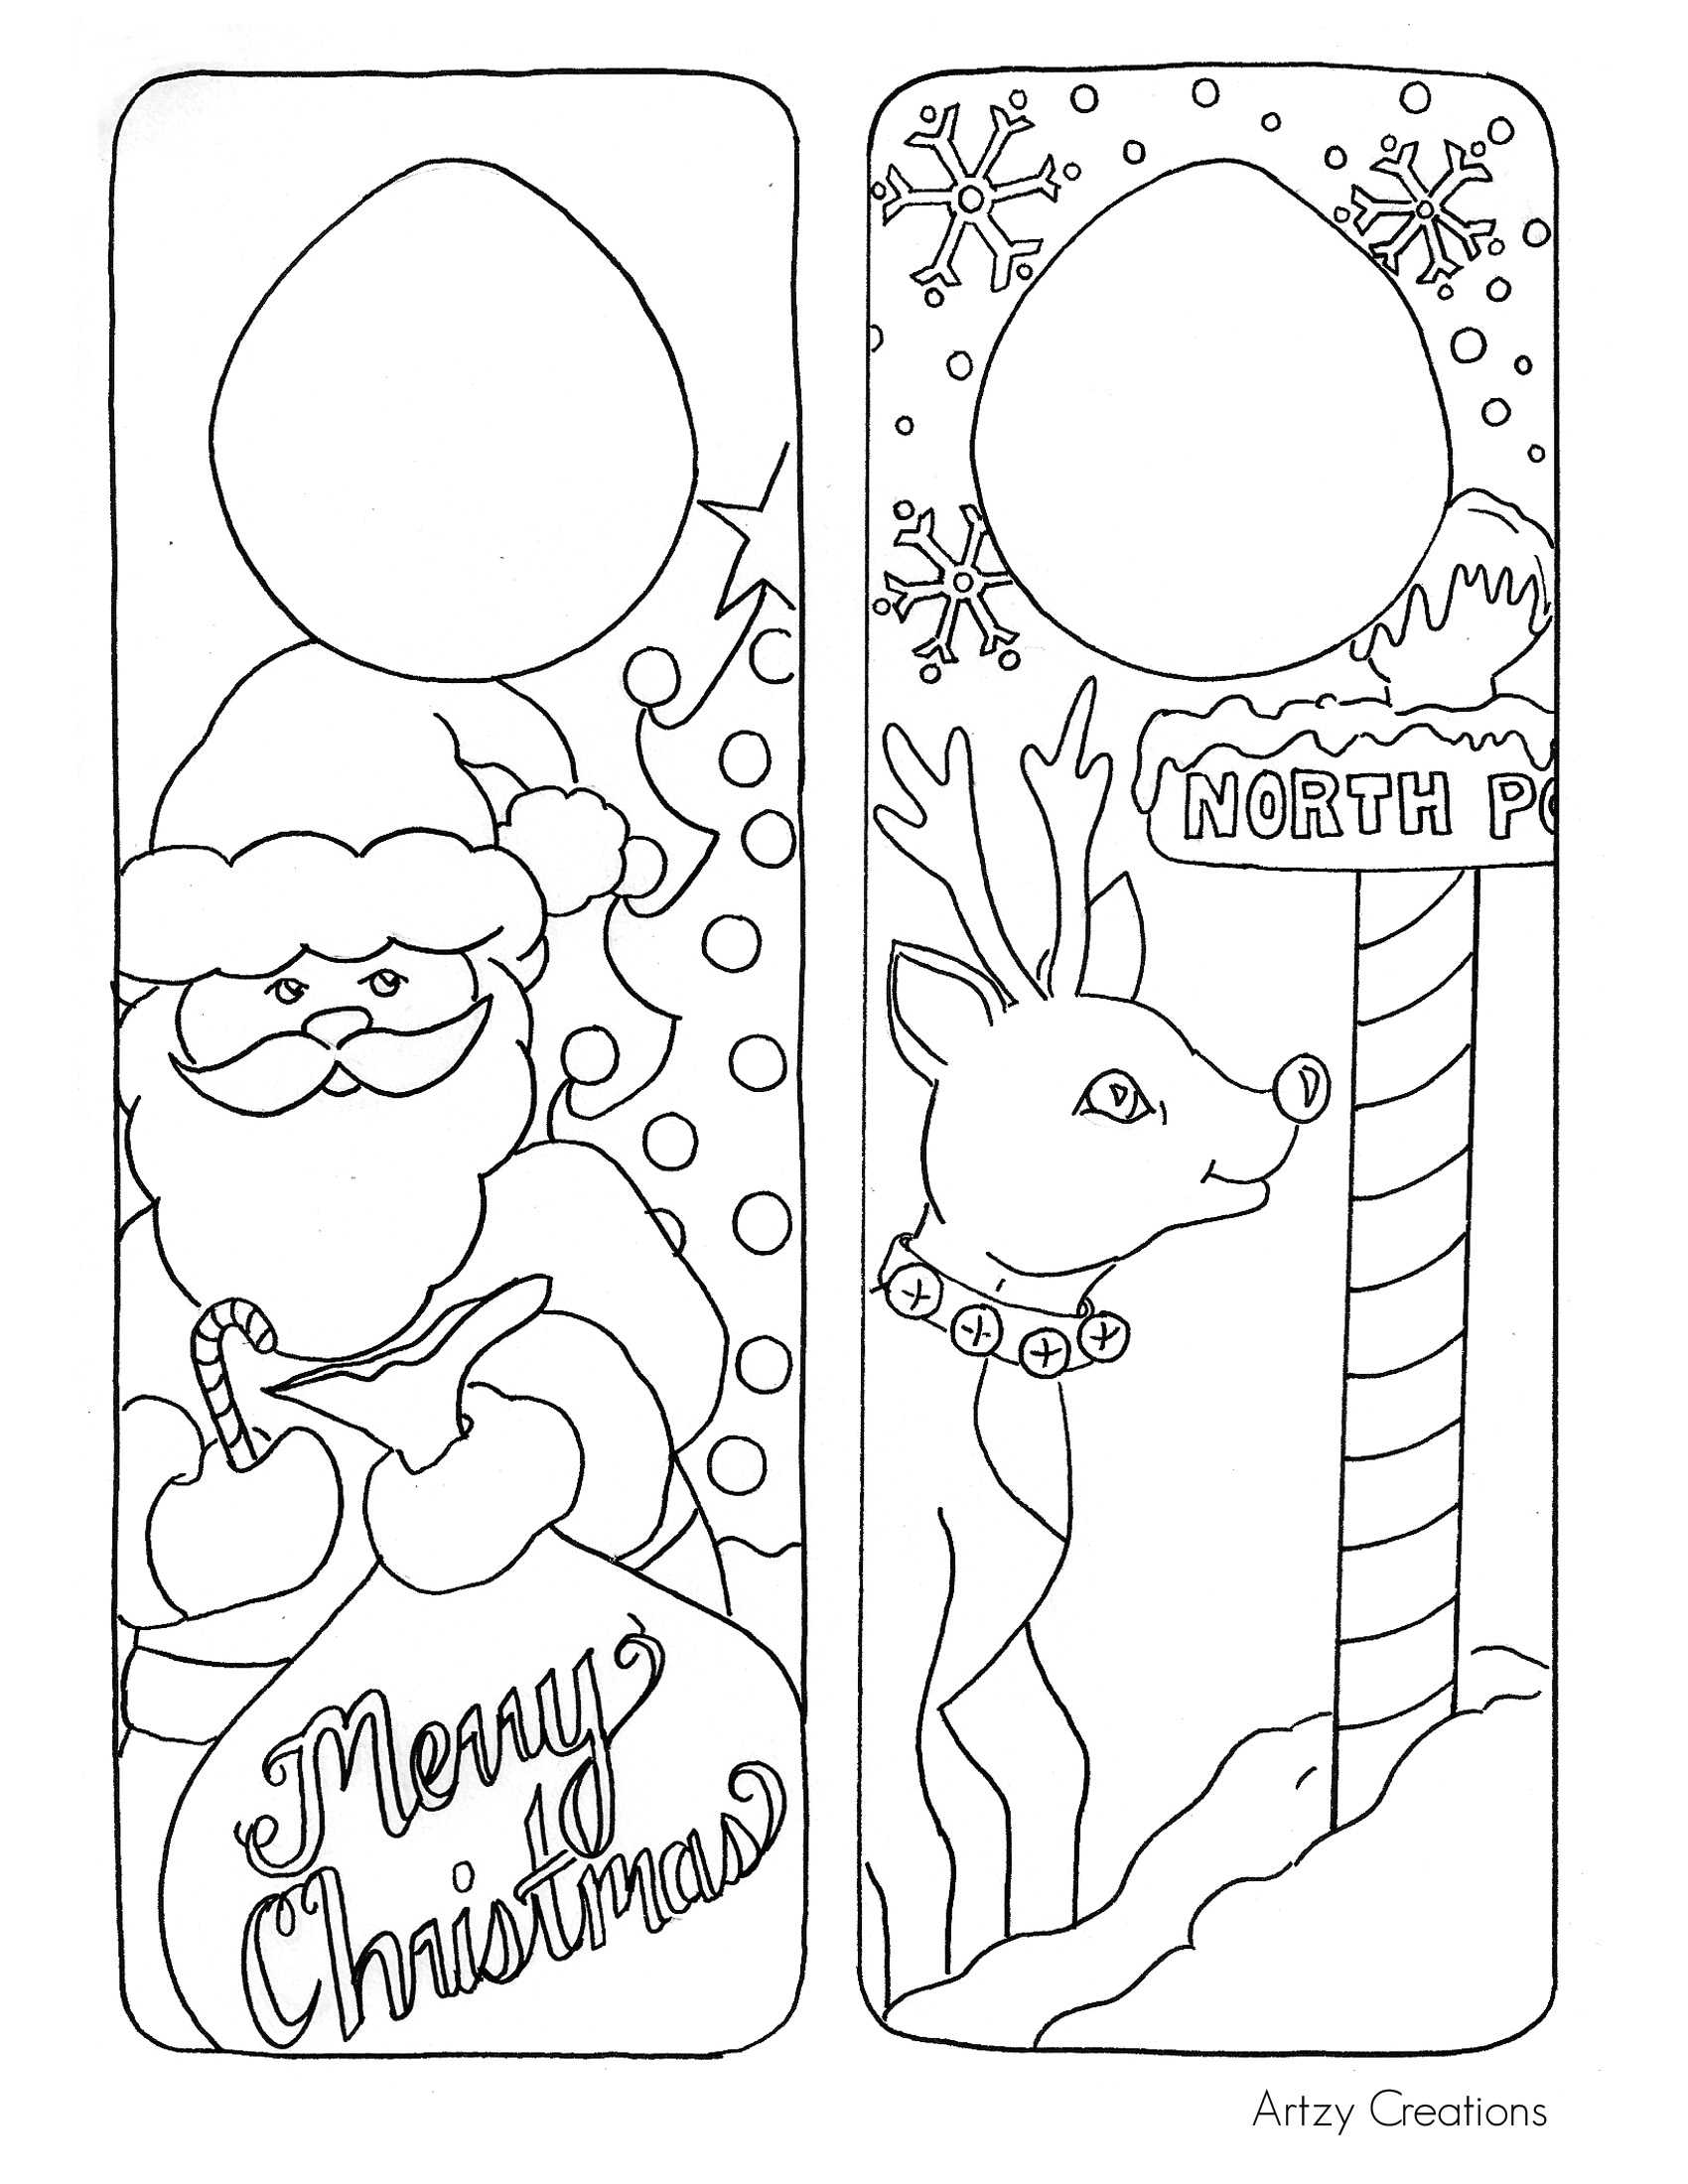 Free Printable Christmas Worksheets for Kids as Well as Printable Christmas Activities for Kids – Fun for Christmas